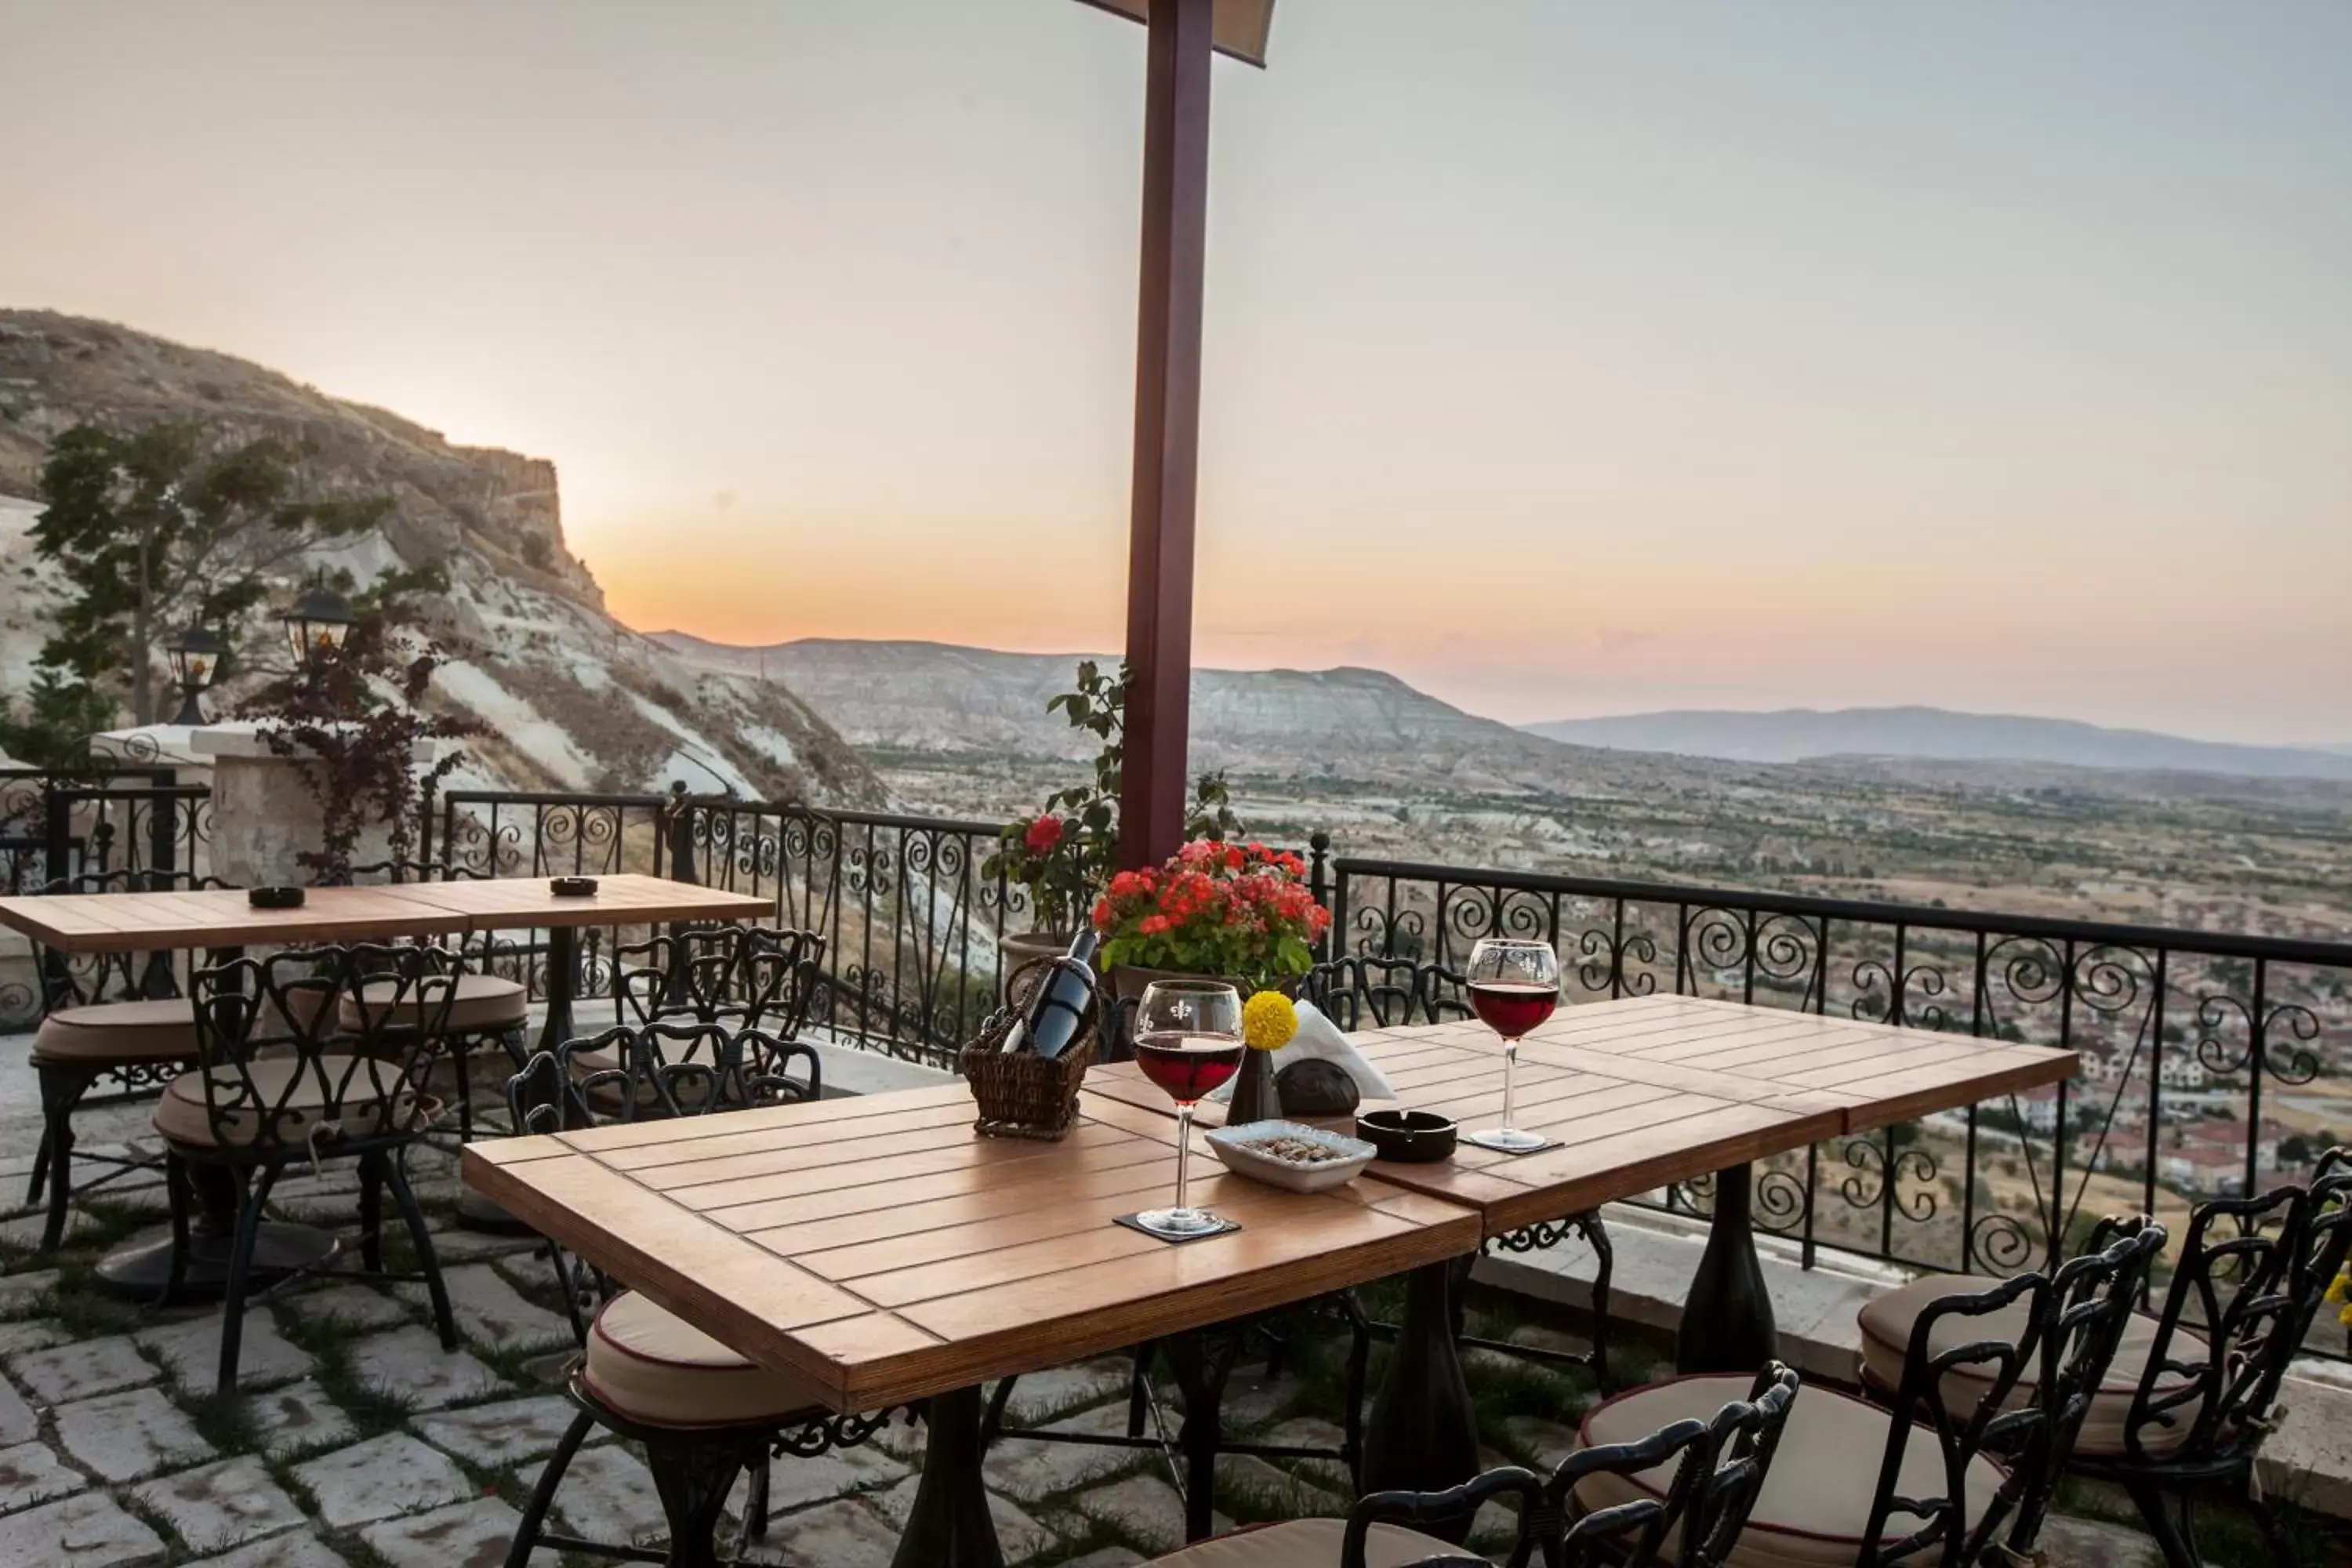 Restaurant/places to eat in Kayakapi Premium Caves Cappadocia